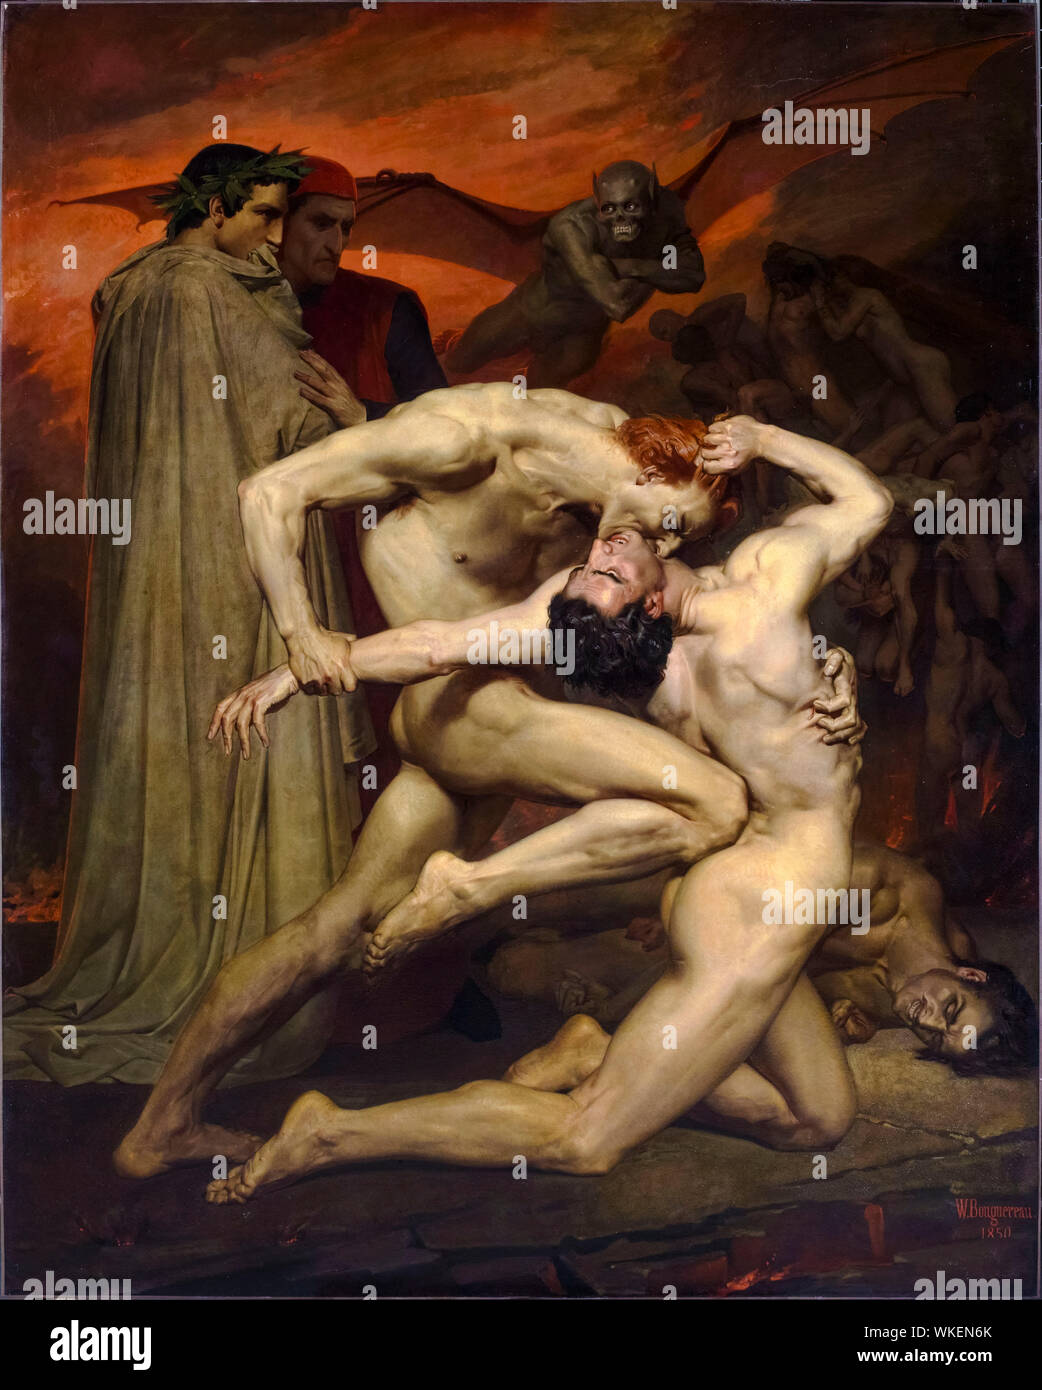 William-Adolphe Bouguereau, peinture, Dante et Virgile en Enfer, 1850 Banque D'Images